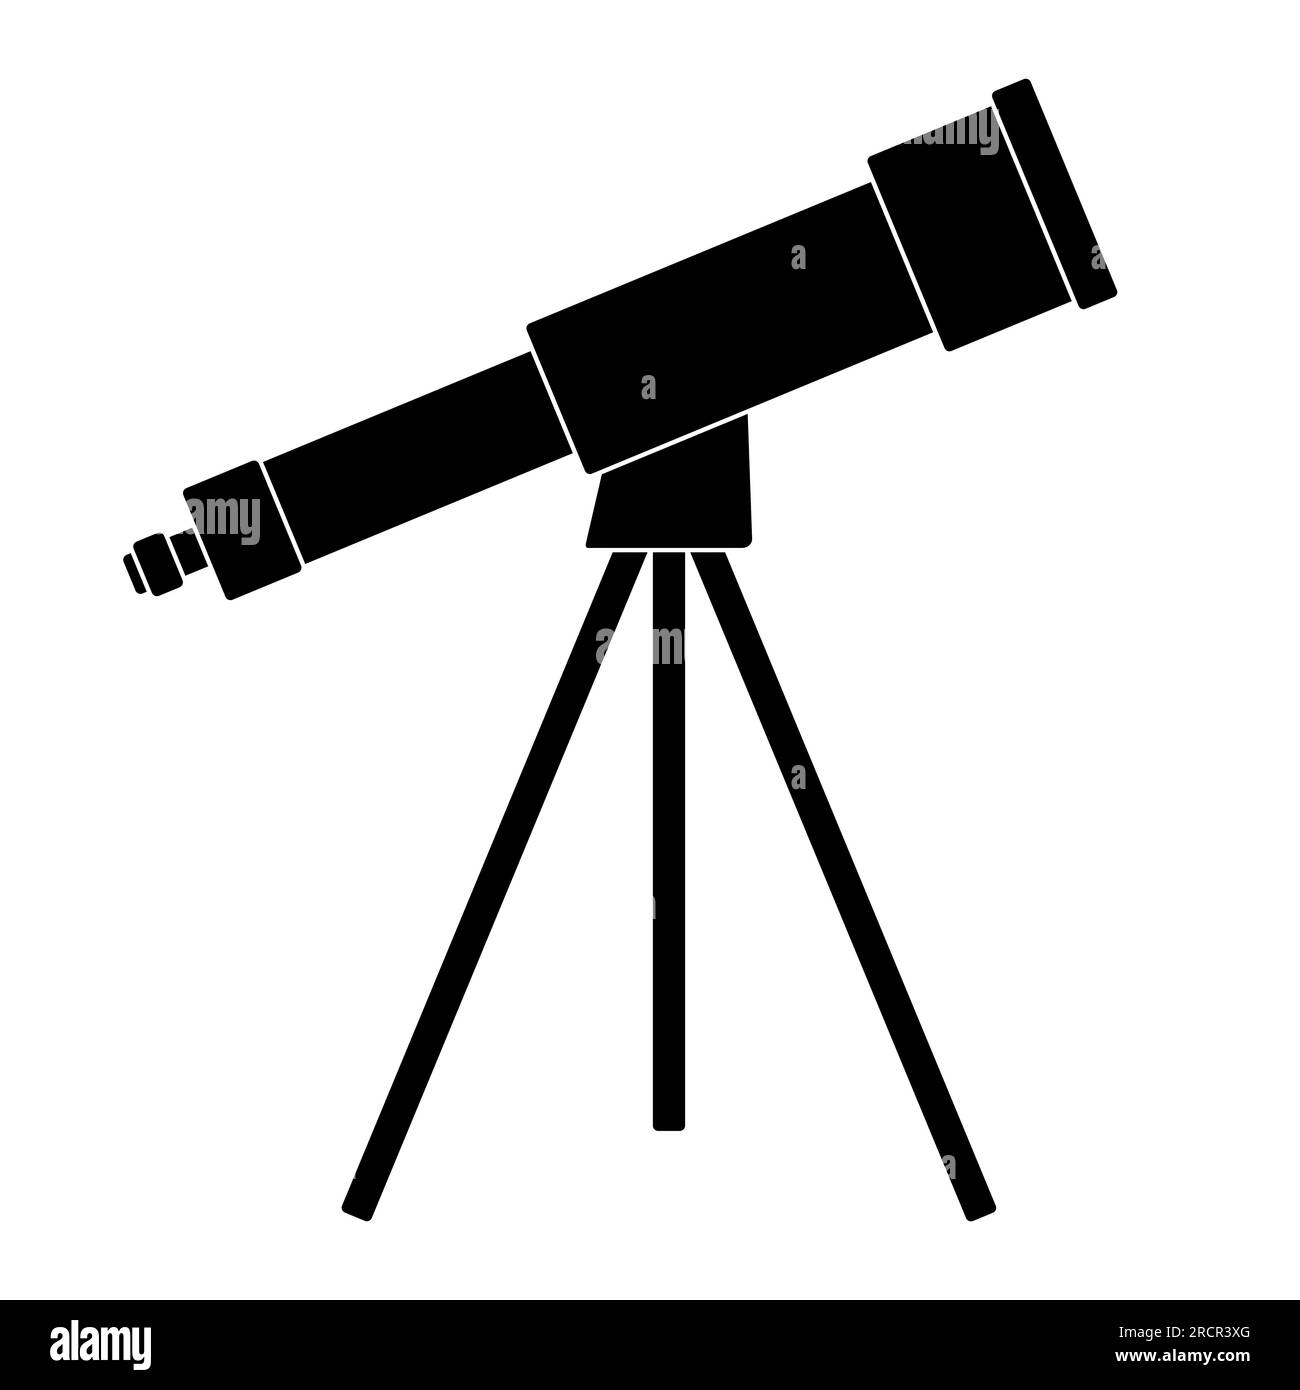 pirate telescope silhouette